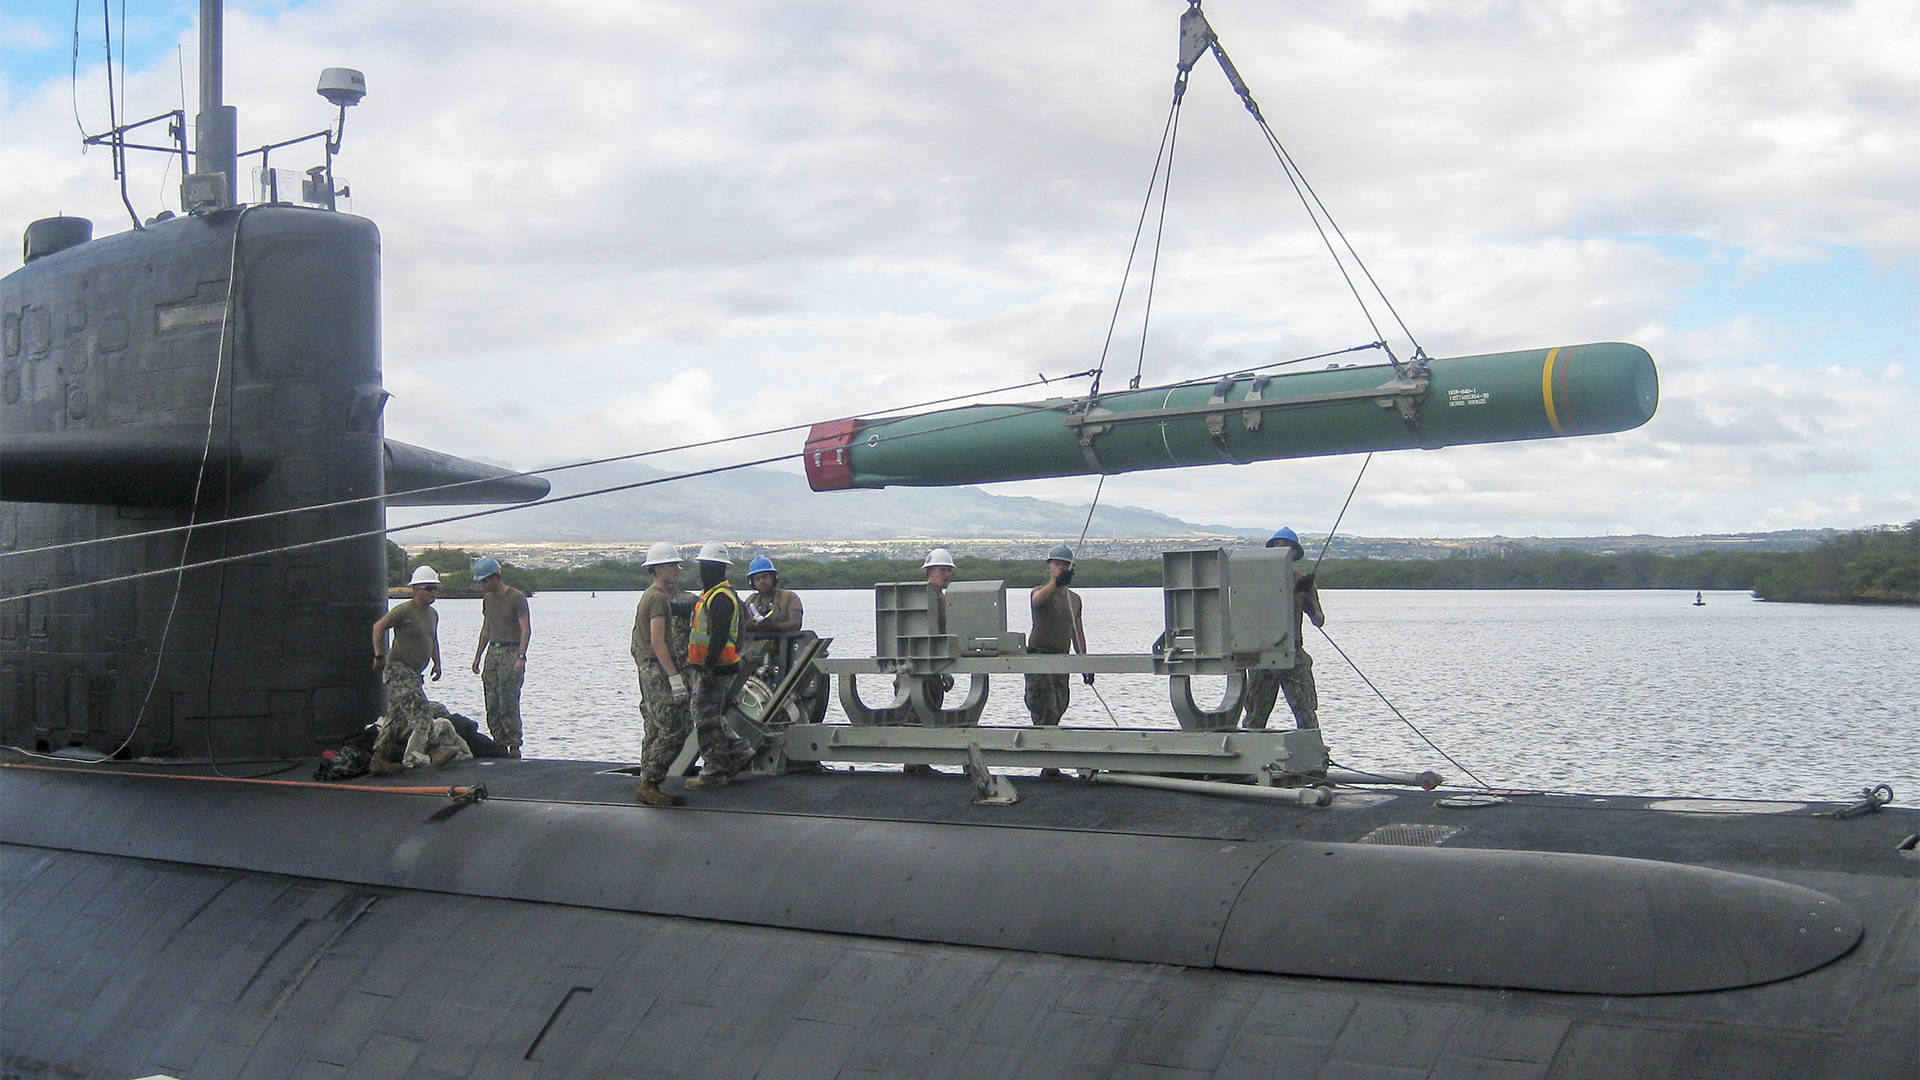 原创突破禁区日本锂电潜艇拟装备射程1000公里导弹可攻击别国腹地